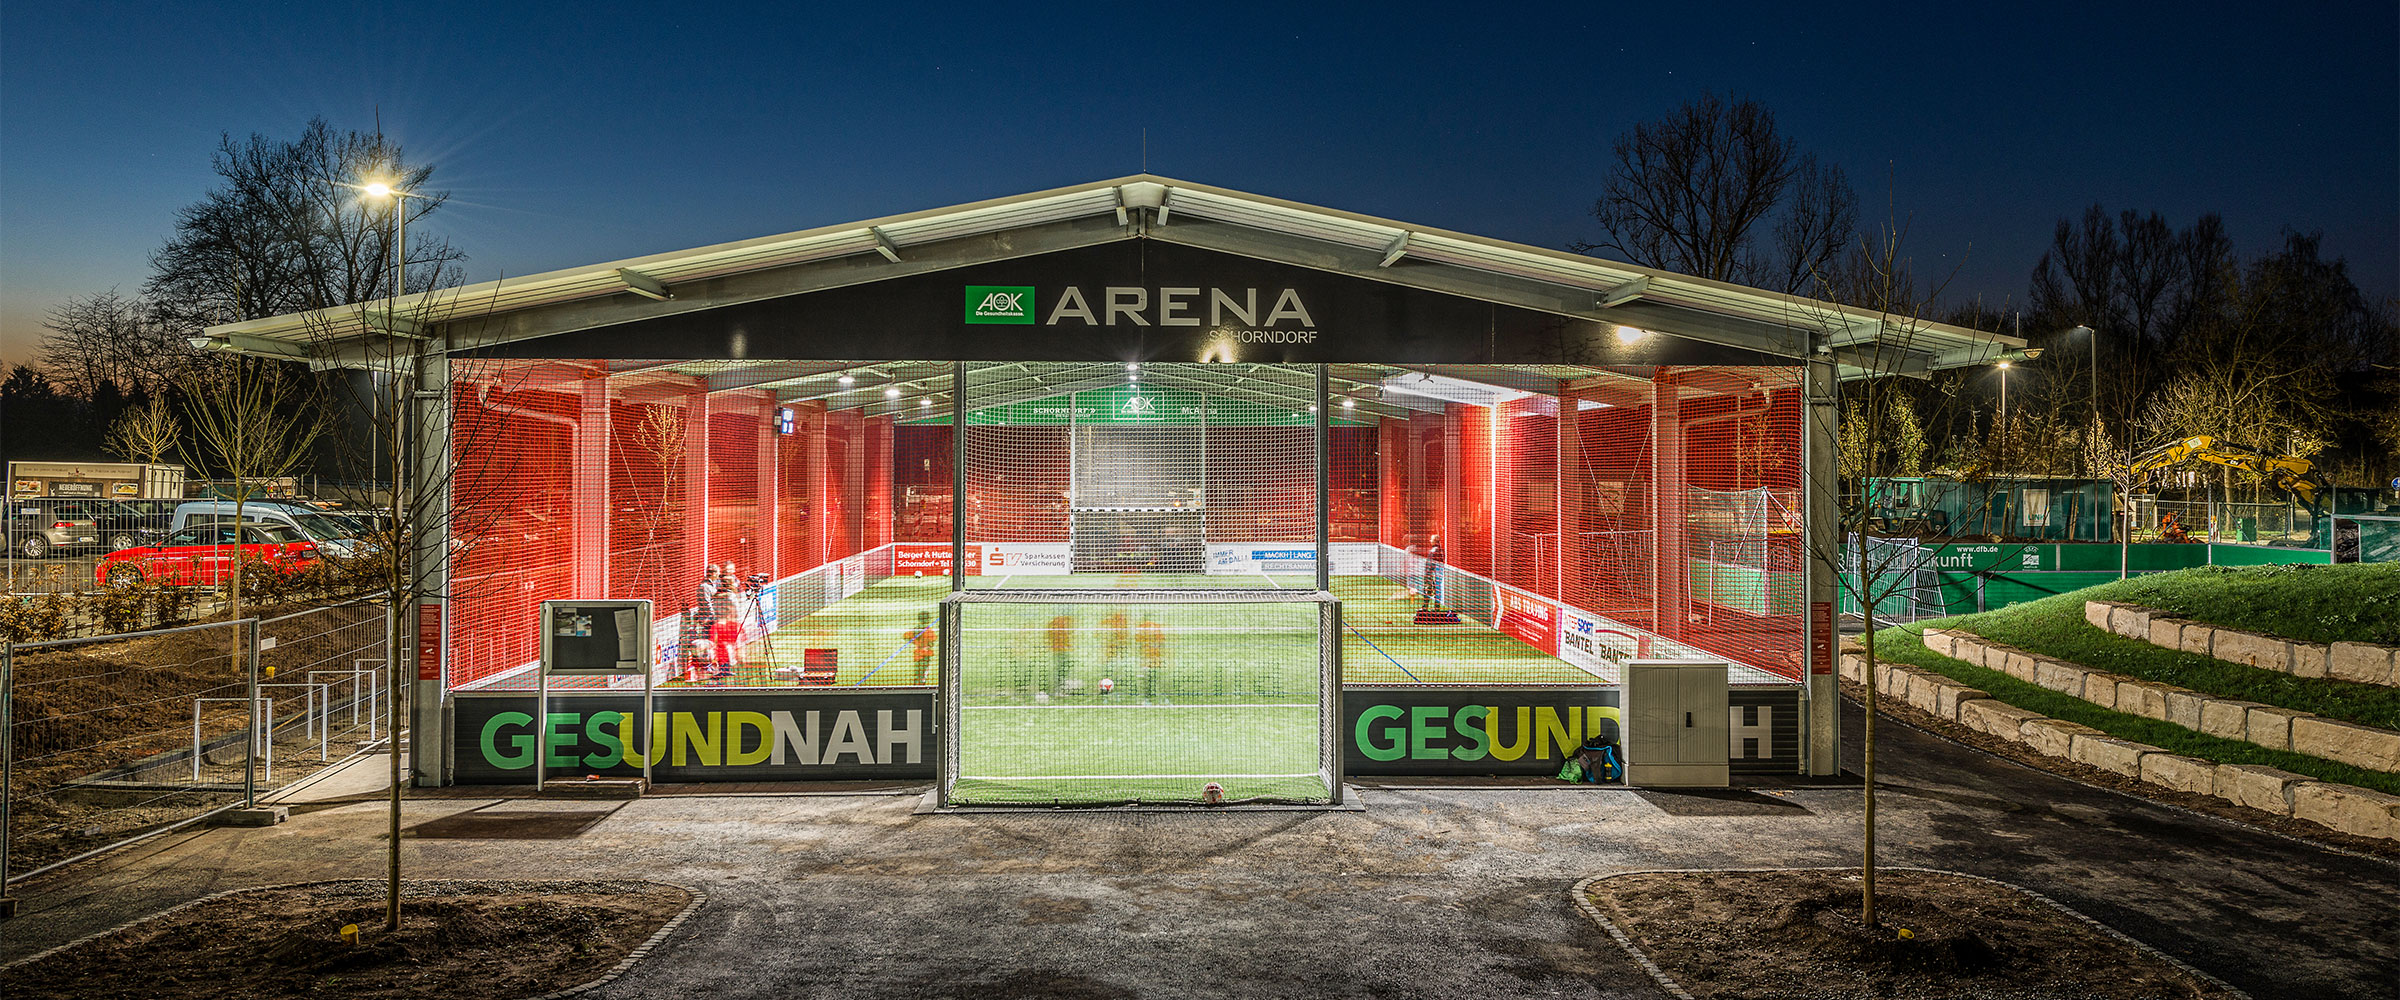 Die McArena Soccerhalle in Schorndorf kann einfach online gebucht werden.